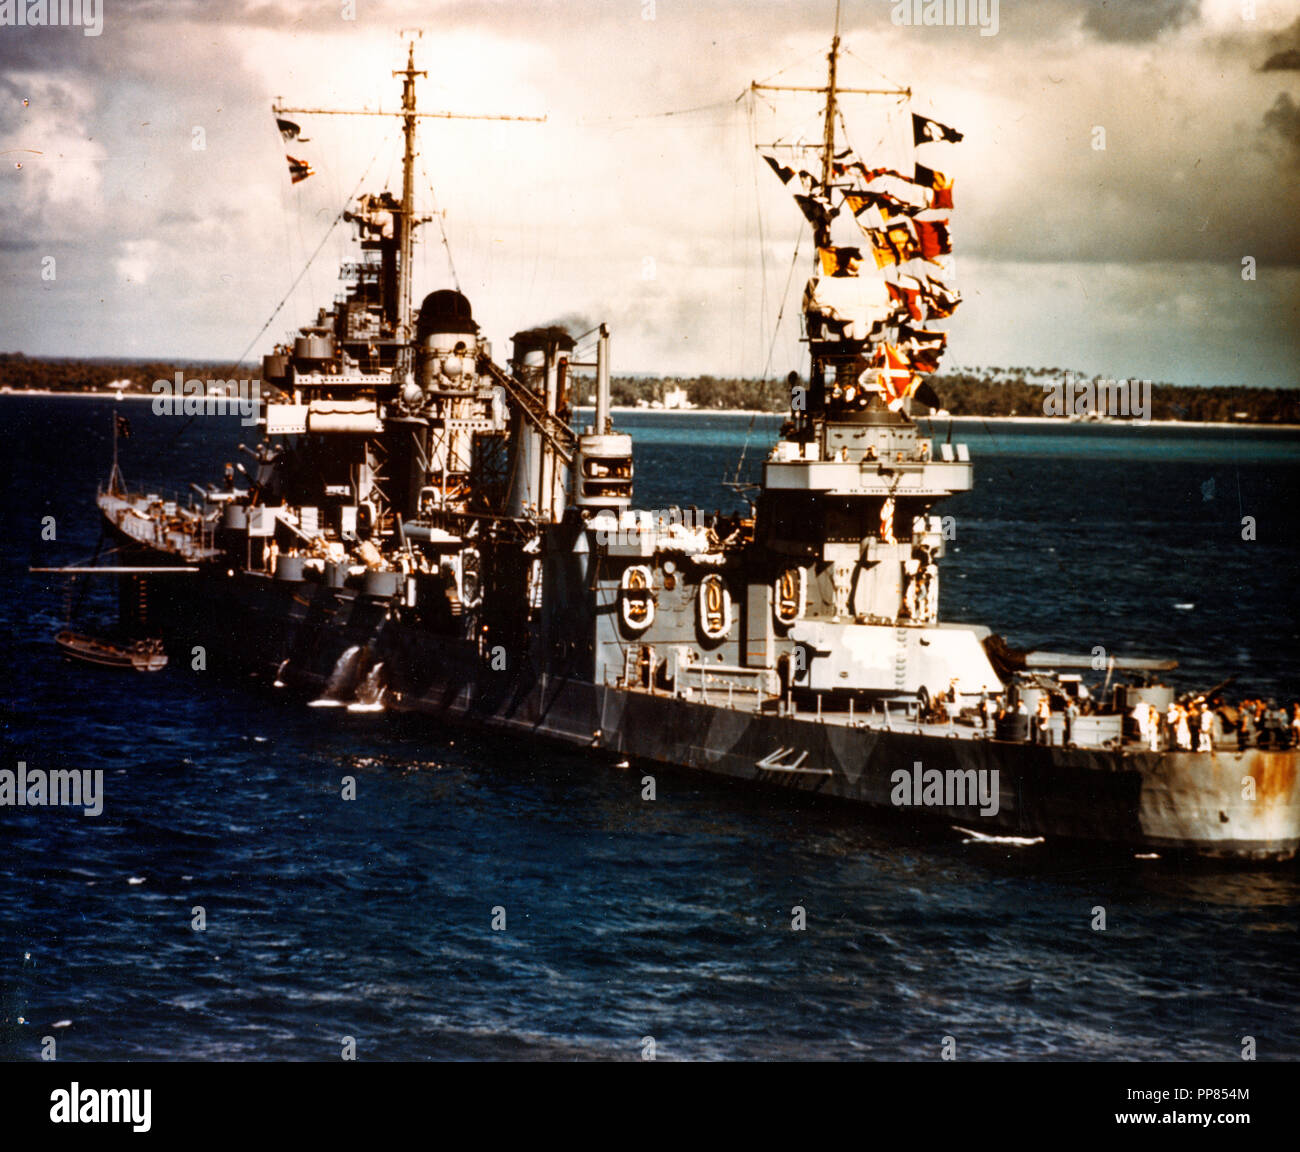 USS Quincy (CA-39) von der USS Wasp (CV-7), Noumea, Neukaledonien fotografiert, am Vorabend der Invasion von Guadalcanal, 3. August 1942. Sie war sechs Tage später gesunken, während der Schlacht von Savo Island. Hinweis des Quincy Signal flags und Maßnahme 12, modifiziert, Camouflage Scheme. Stockfoto